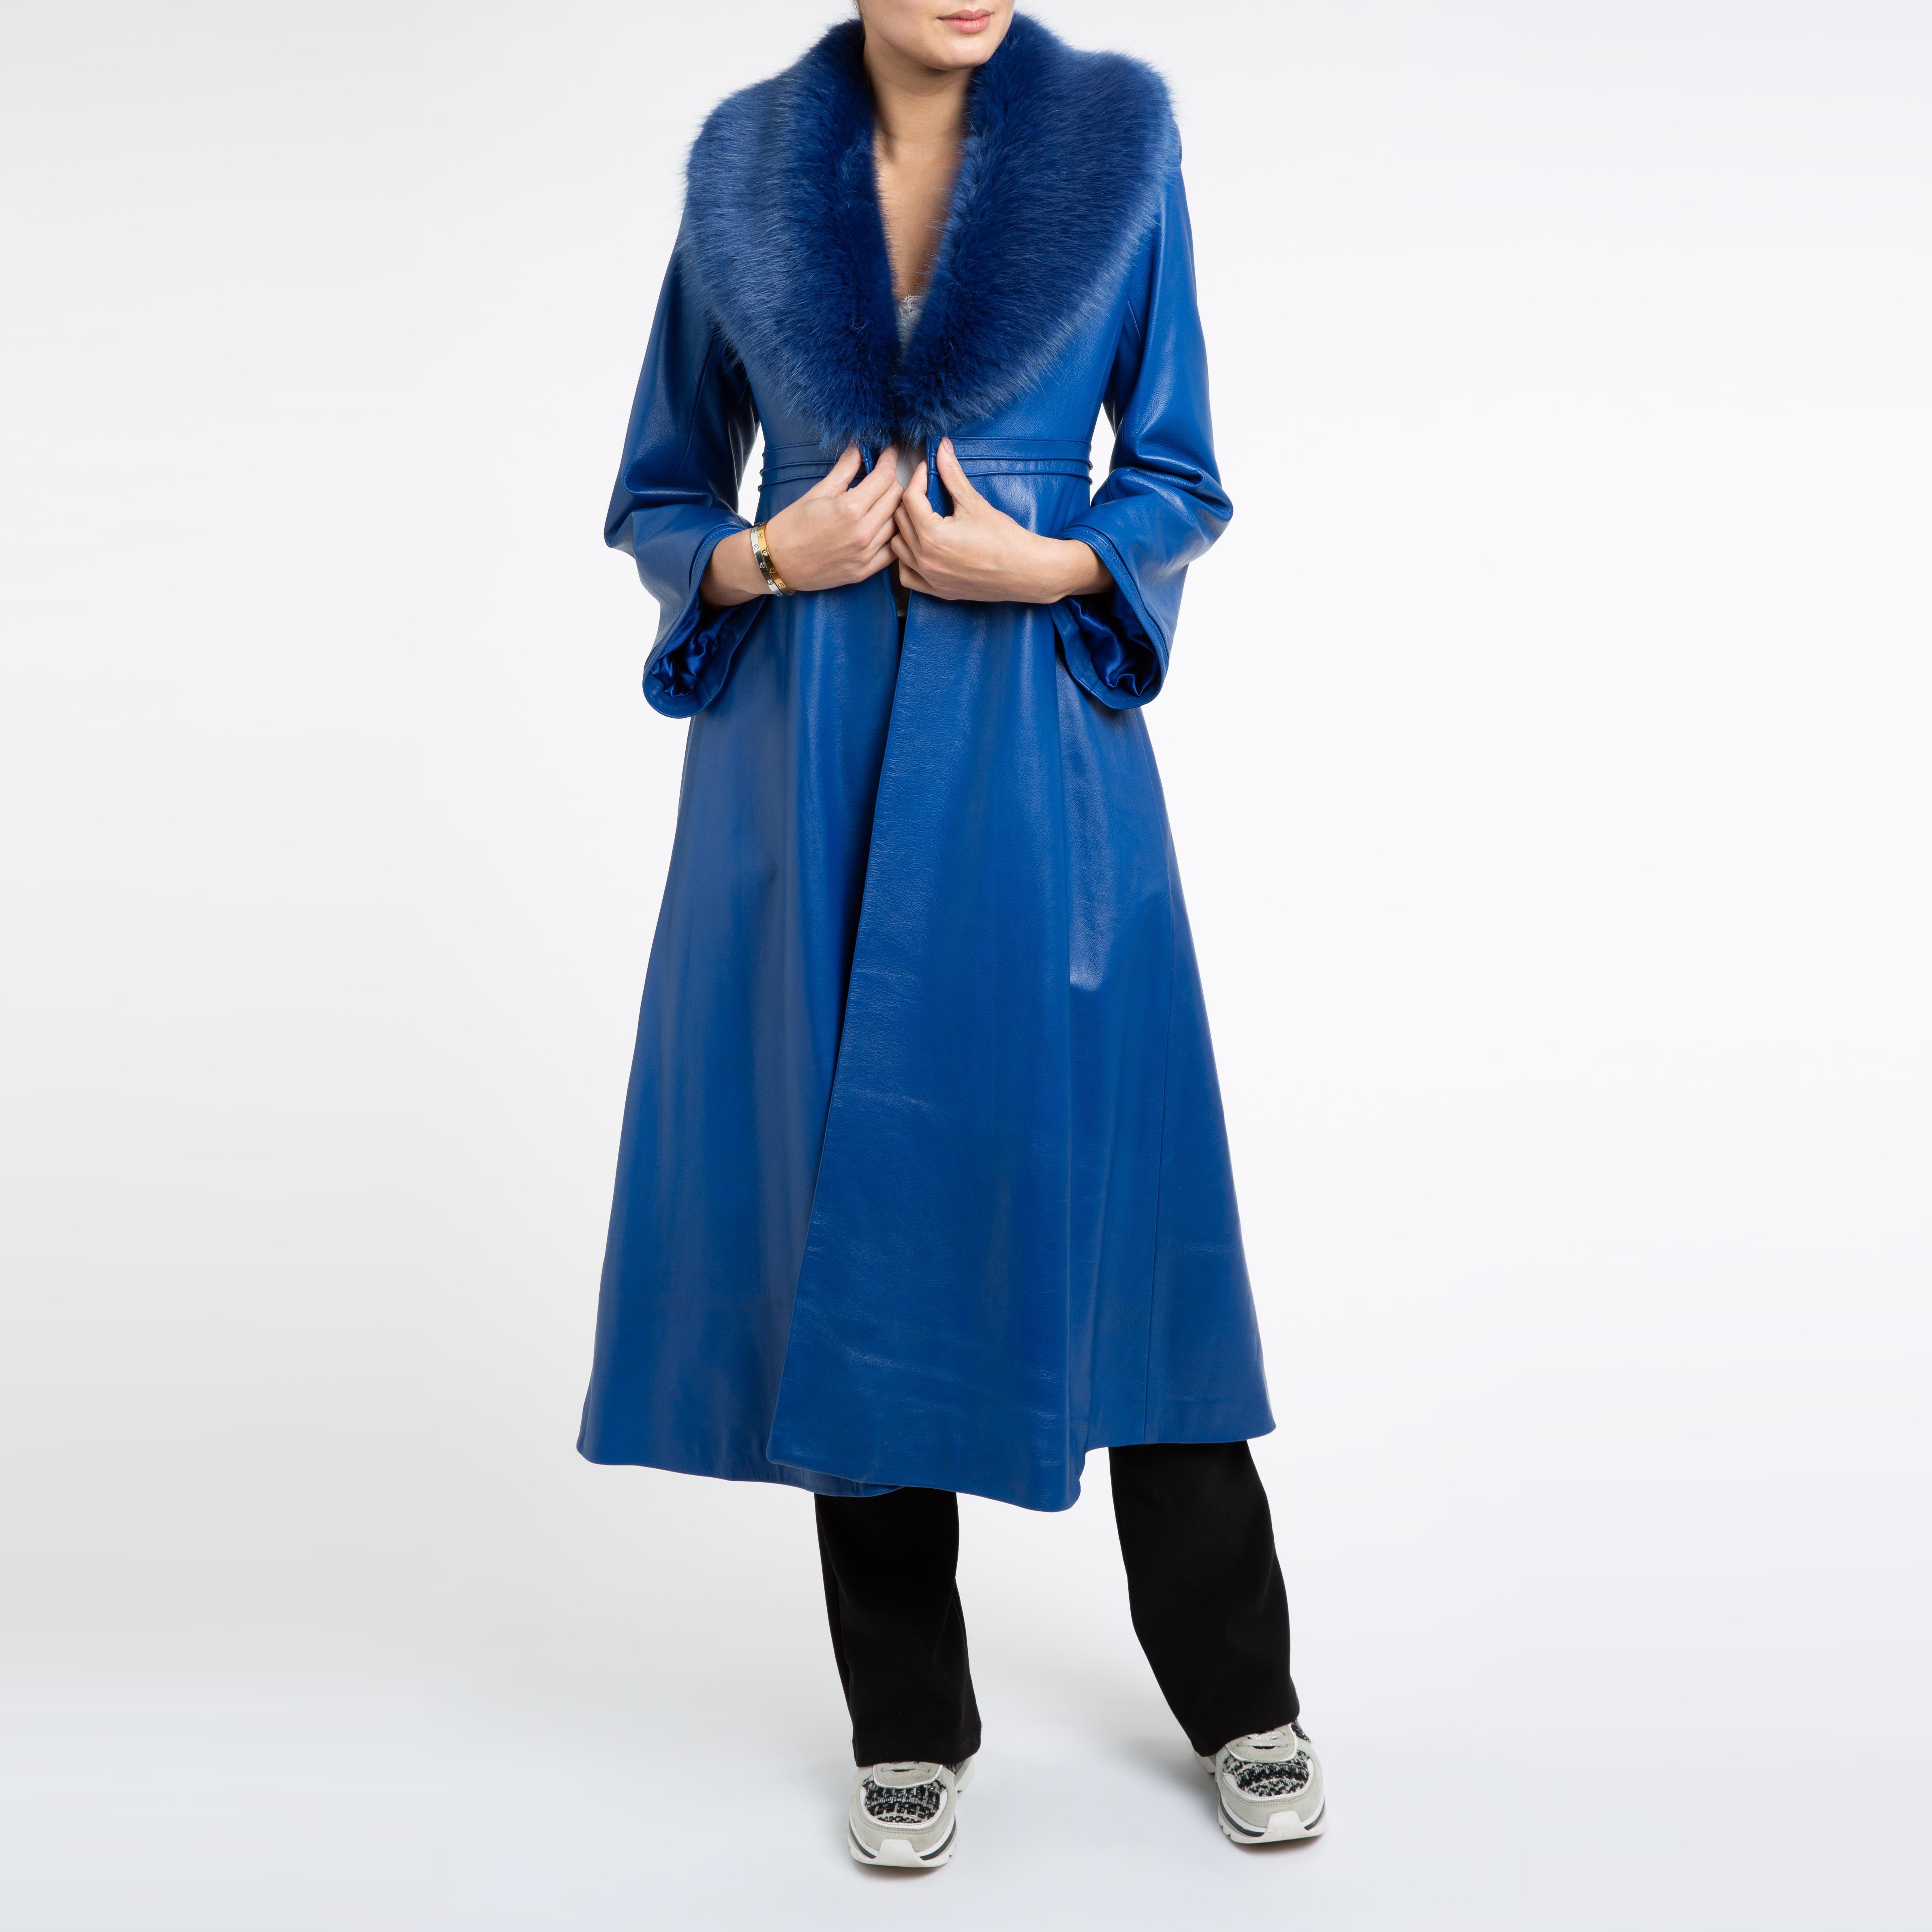 Verheyen London Edward Leather Coat in Blue with Faux Fur - Size uk 14 For Sale 3